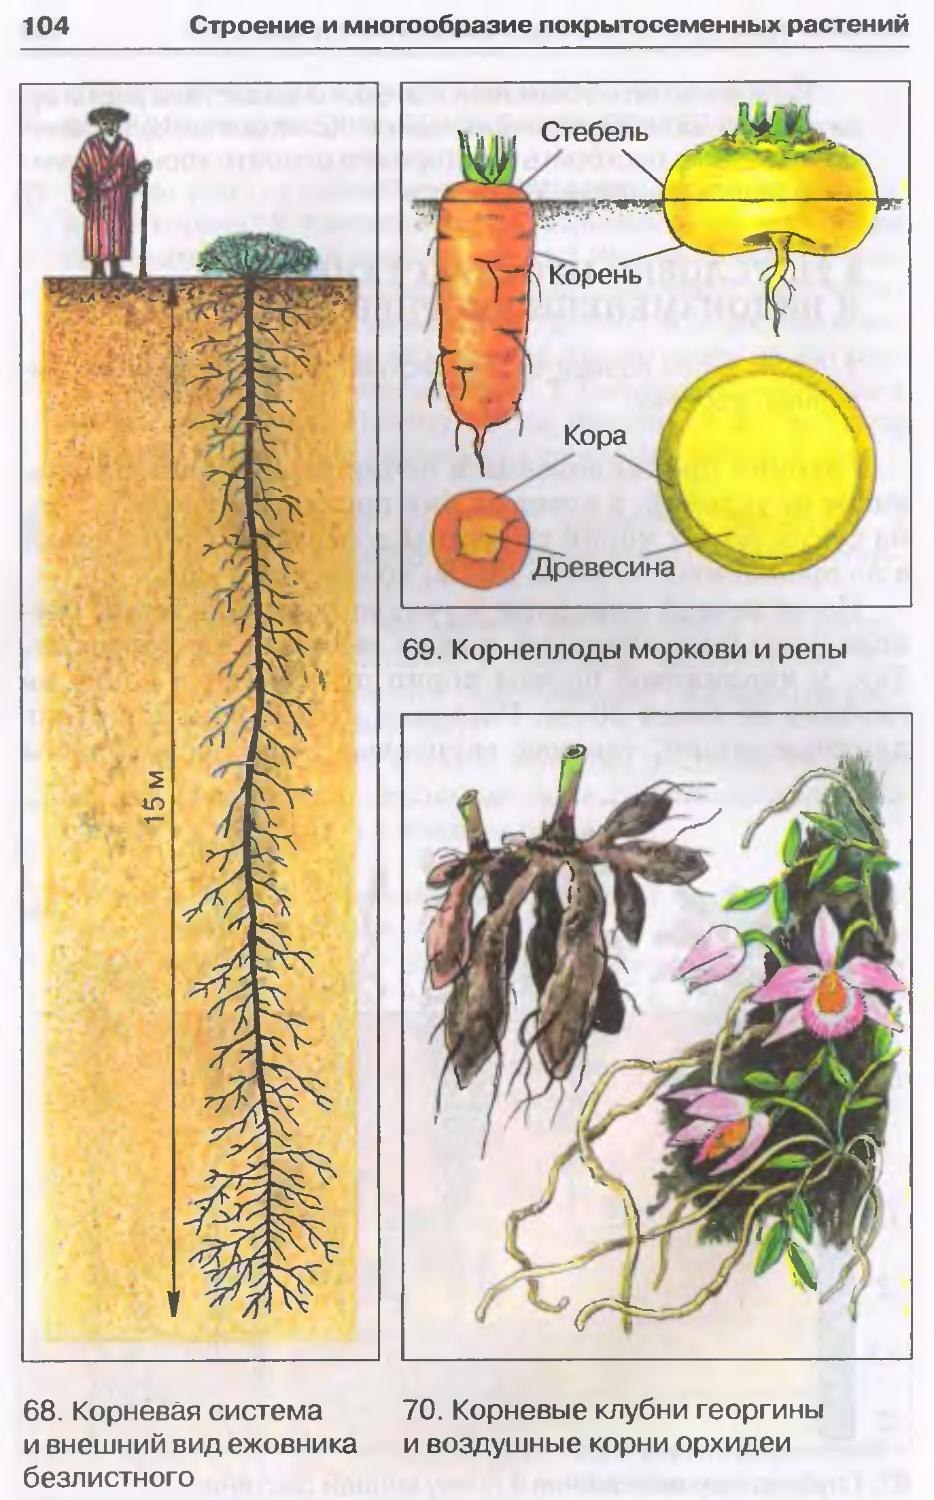 Корневая система цветковых растений. Видоизменения корневой системы растений. Схема корневой системы моркови.